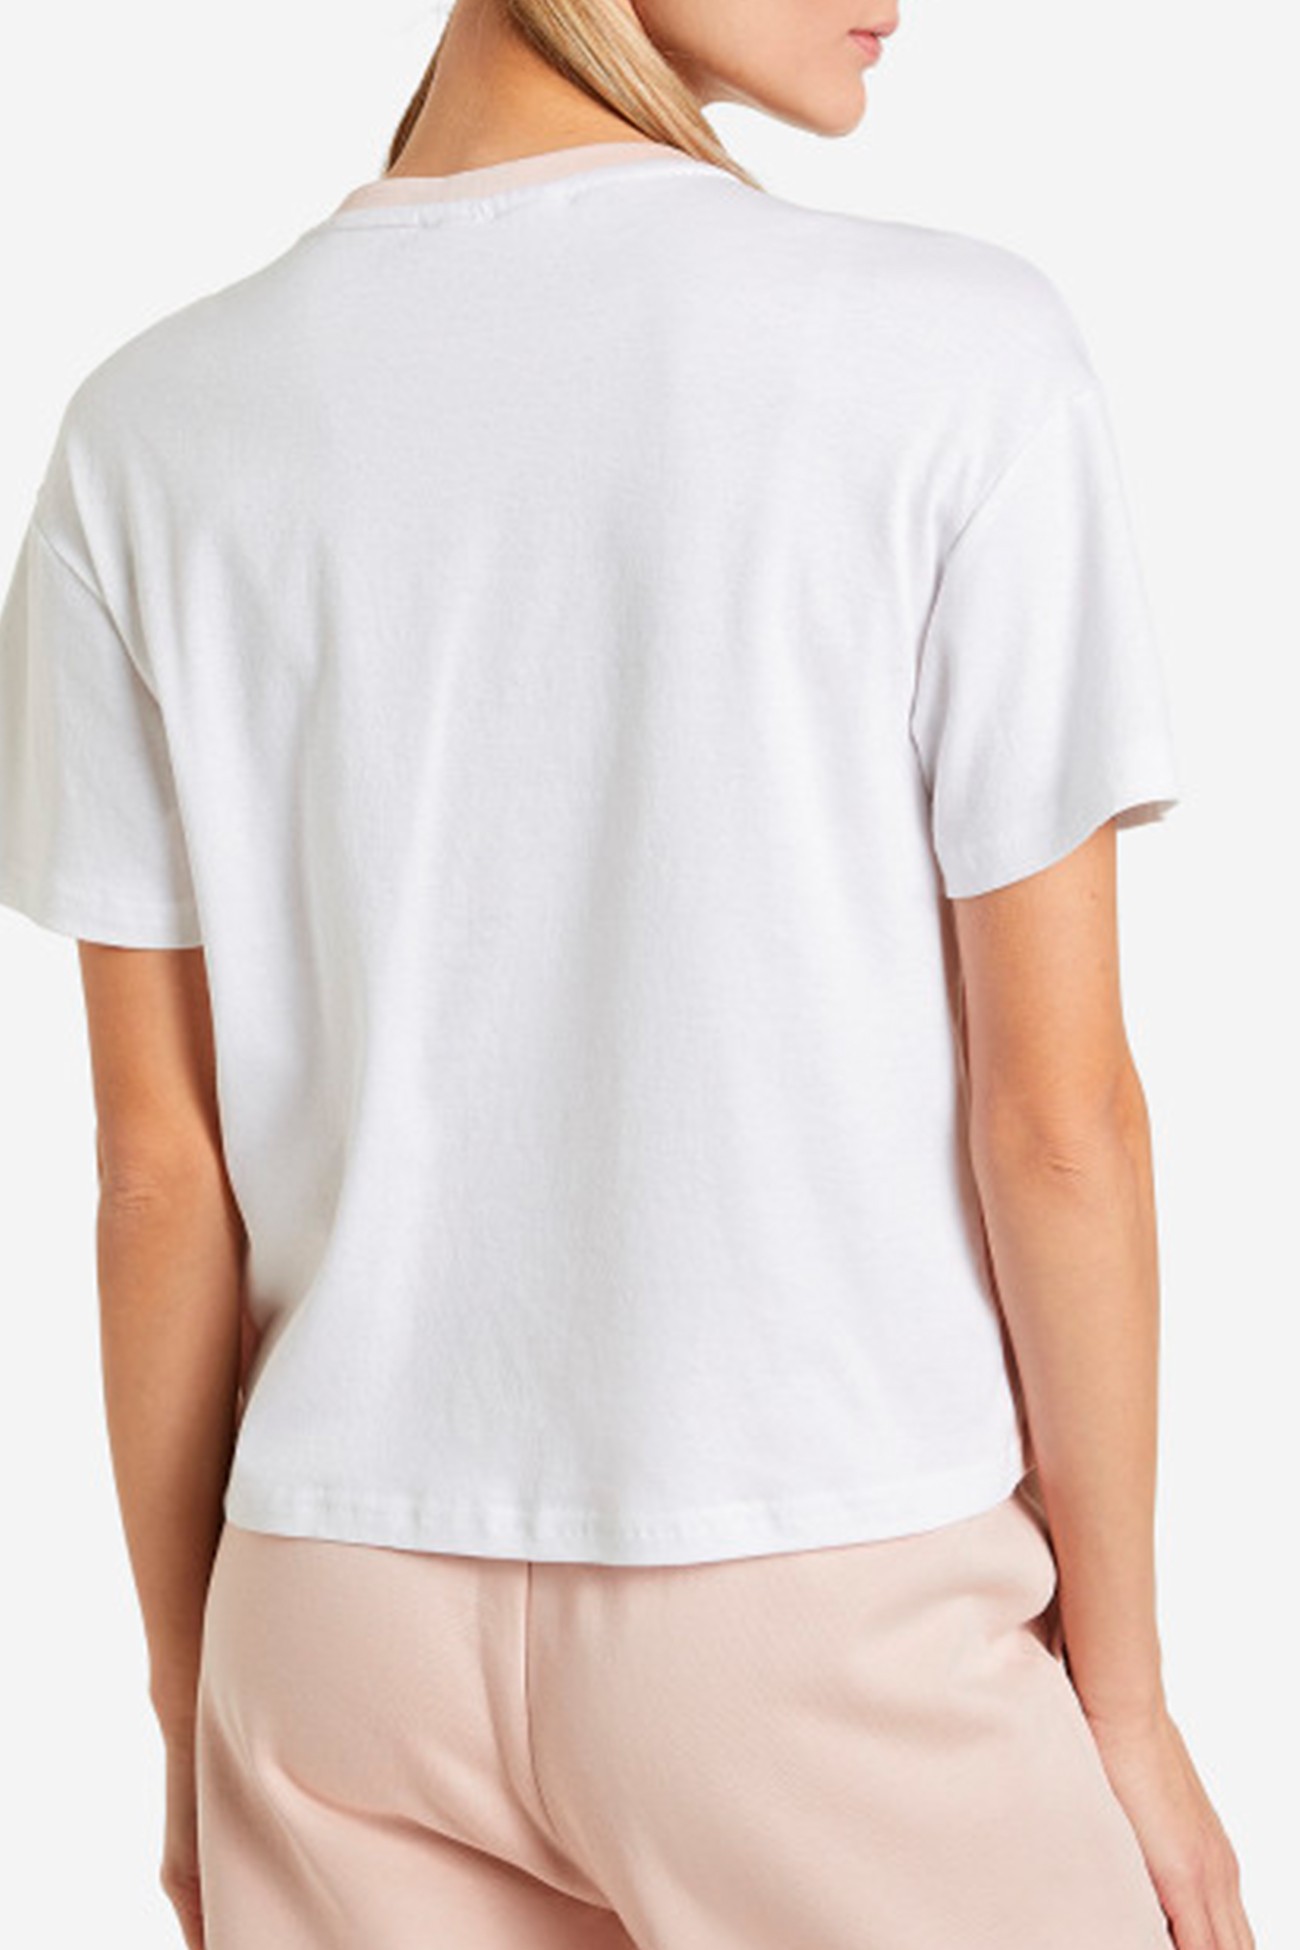 Футболка женская FILA T-shirt белая 113428-KW изображение 3